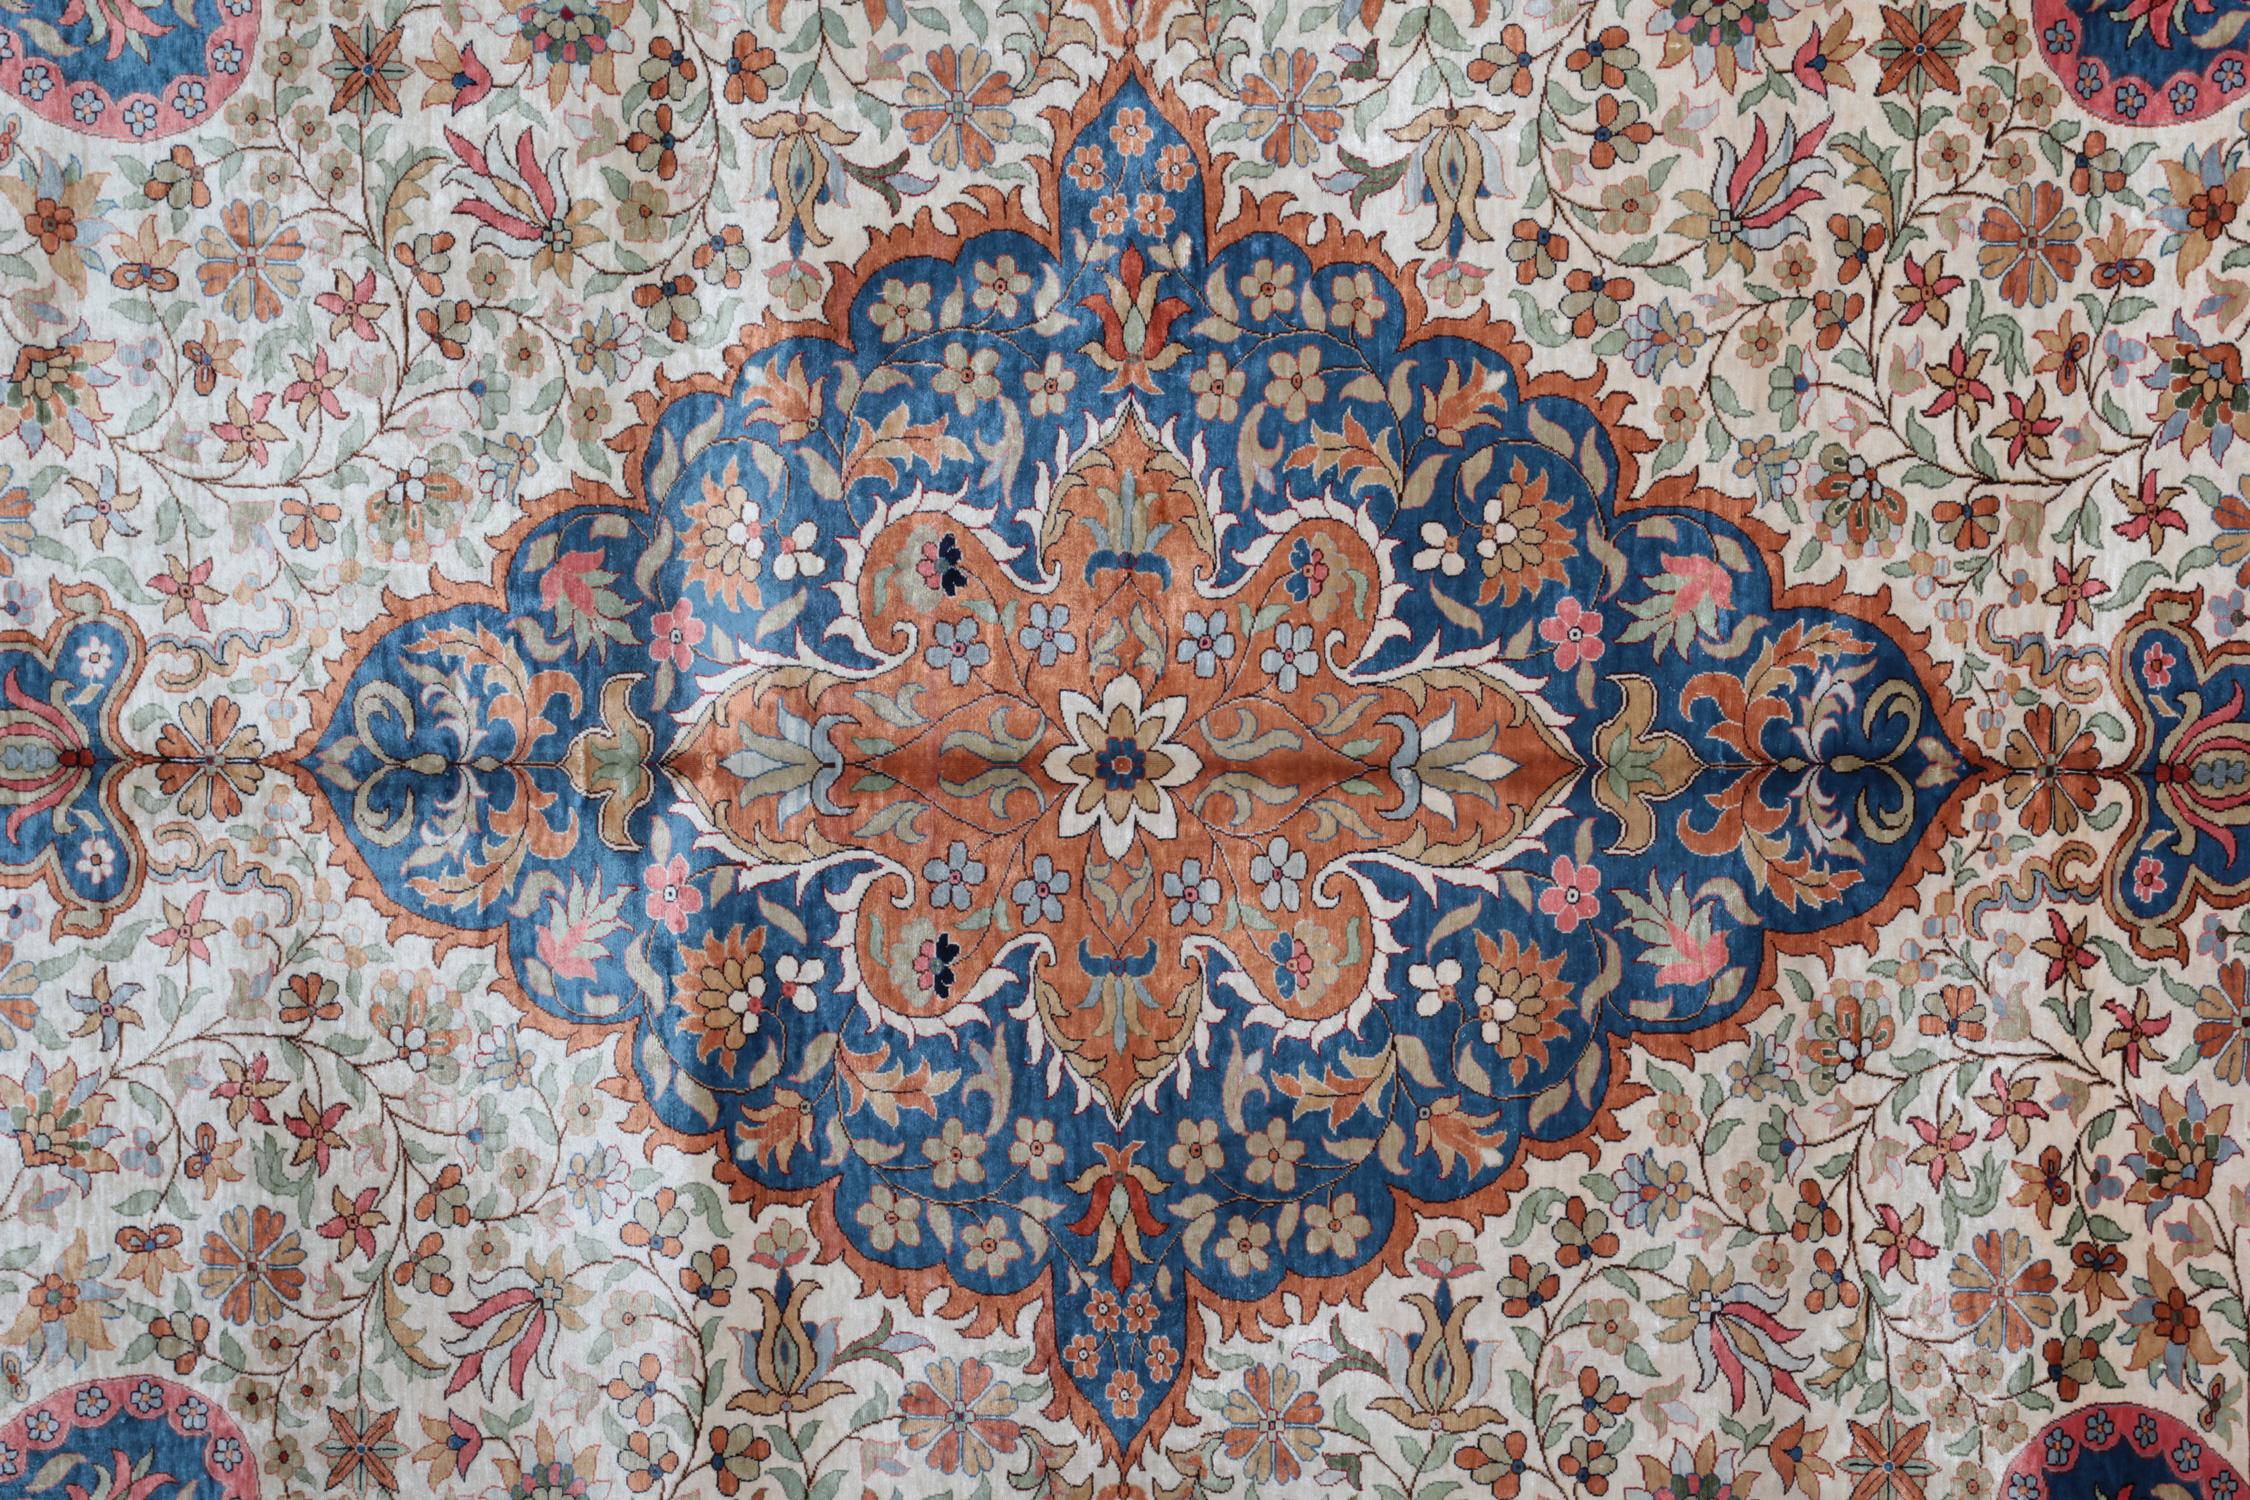 Türkische Vintage-Teppiche werden von vielen als einige der schönsten Teppiche der Welt angesehen. Dieser elegante Teppich hat eine sehr schöne Farbpalette mit Rost, Hellblau, Marine, Beige, Gold und Rosa. Die Herstellung dieser meisterhaften